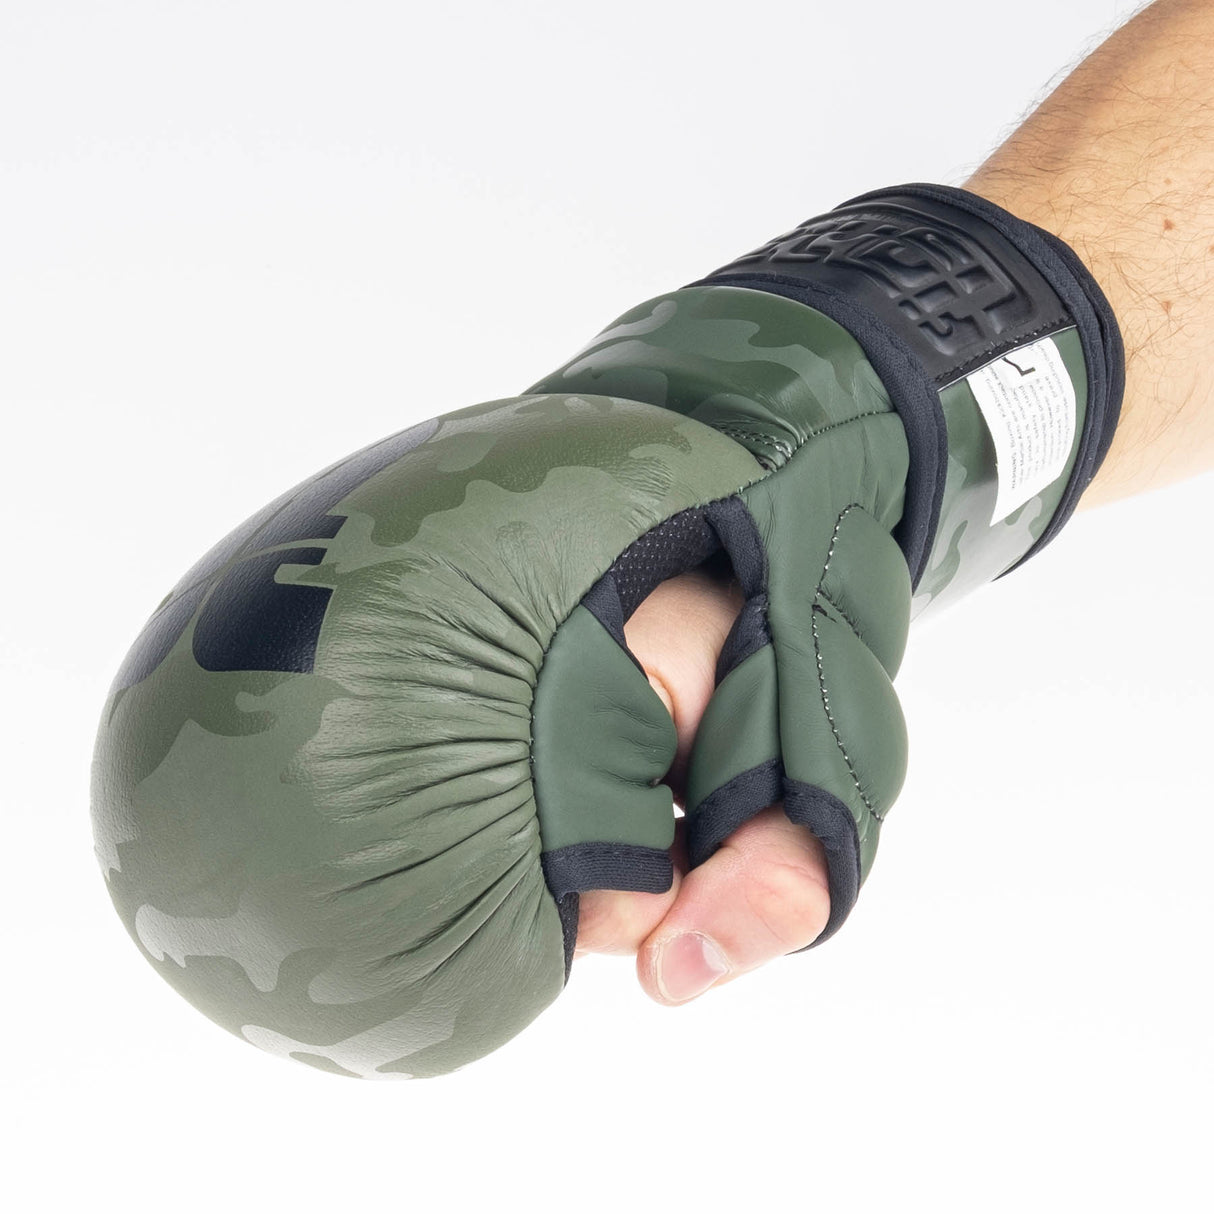 Gants d'entraînement Fighter MMA - camouflage kaki, FMG-001CKH